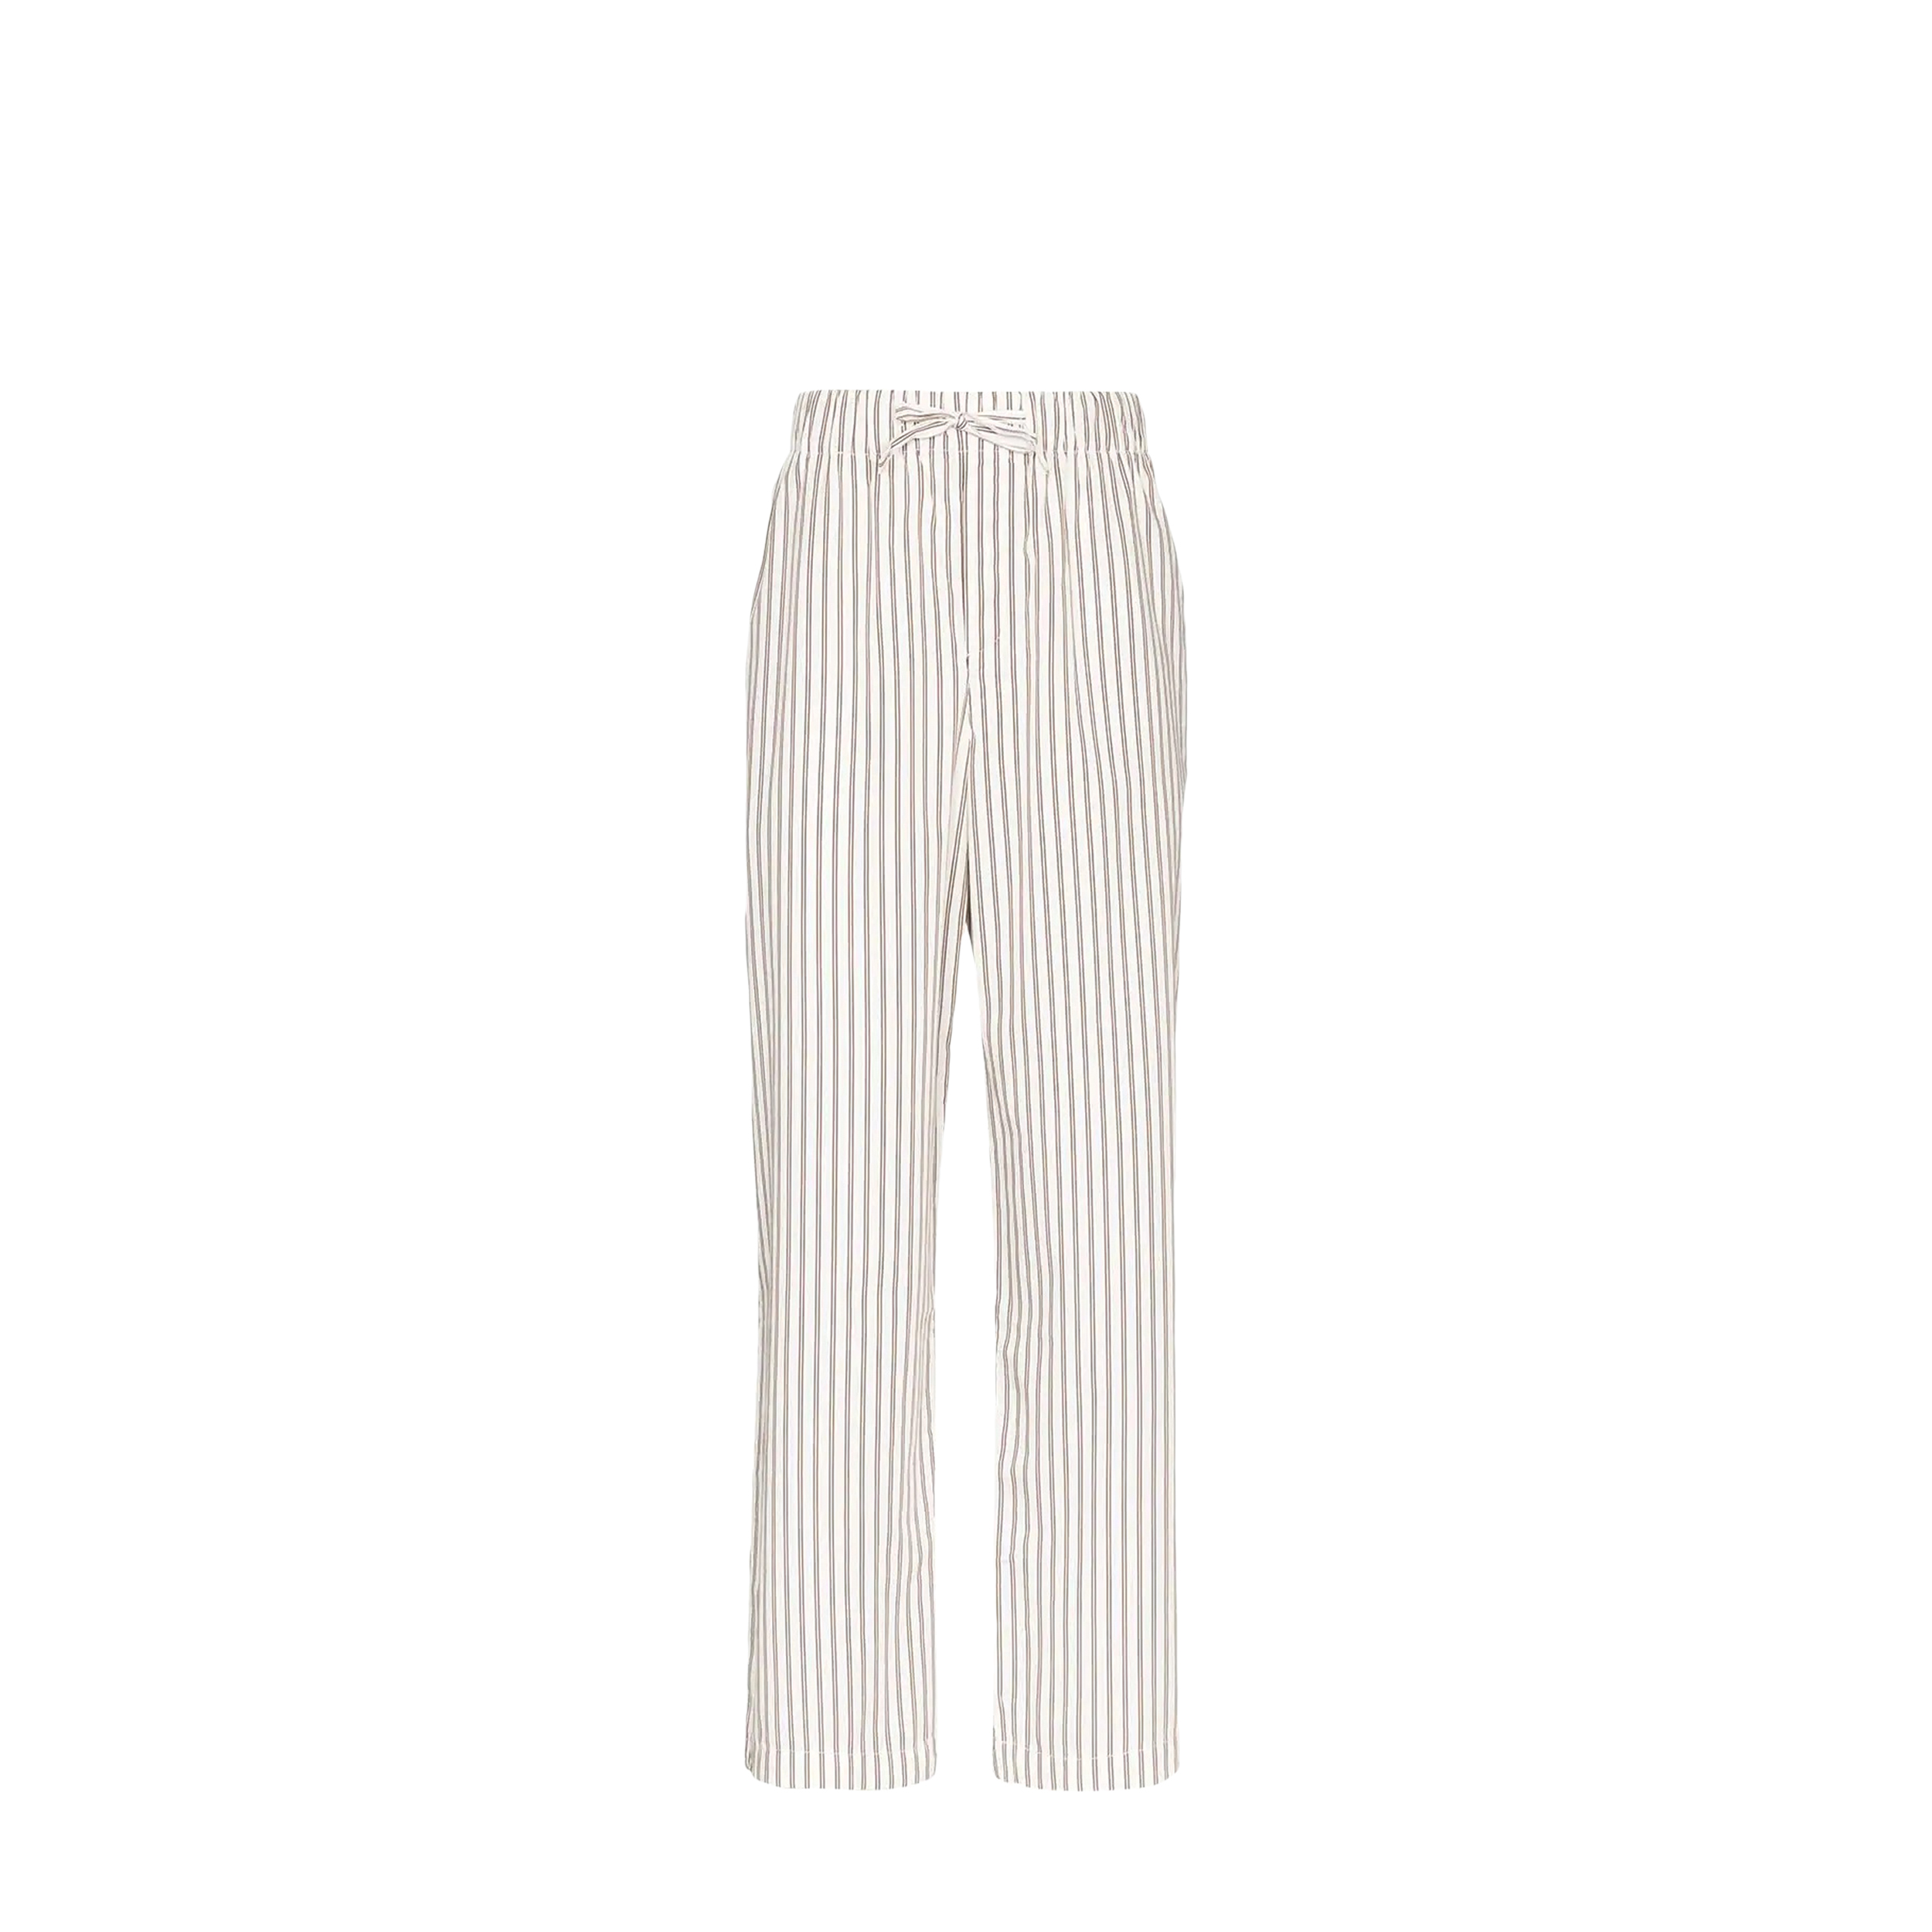 Tekla Tekla Poplin Pyjamas Pants White & Brown Striped (L) SWP-HS Poplin Pyjamas Pants White & Brown Striped (L) - фото 1